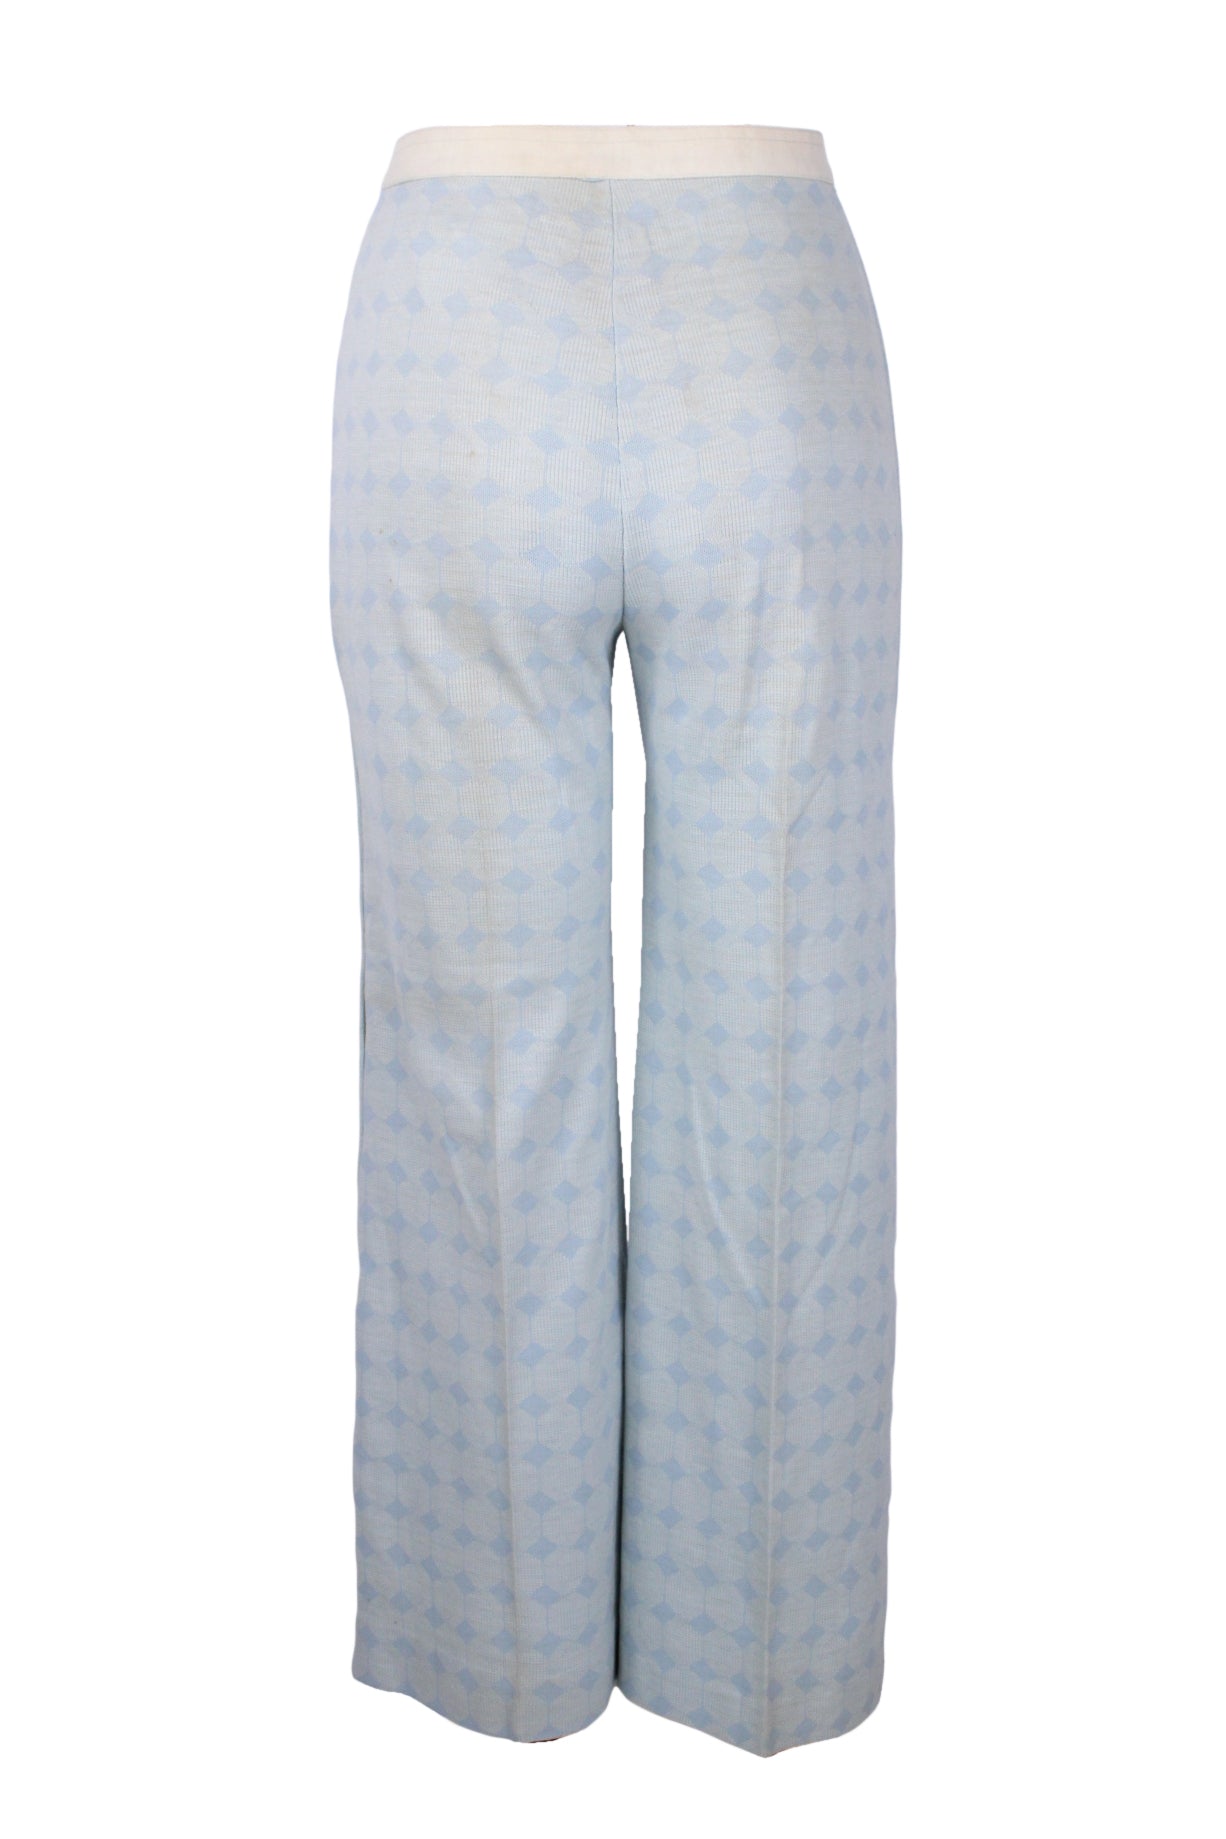 back of blue geometric print pants.